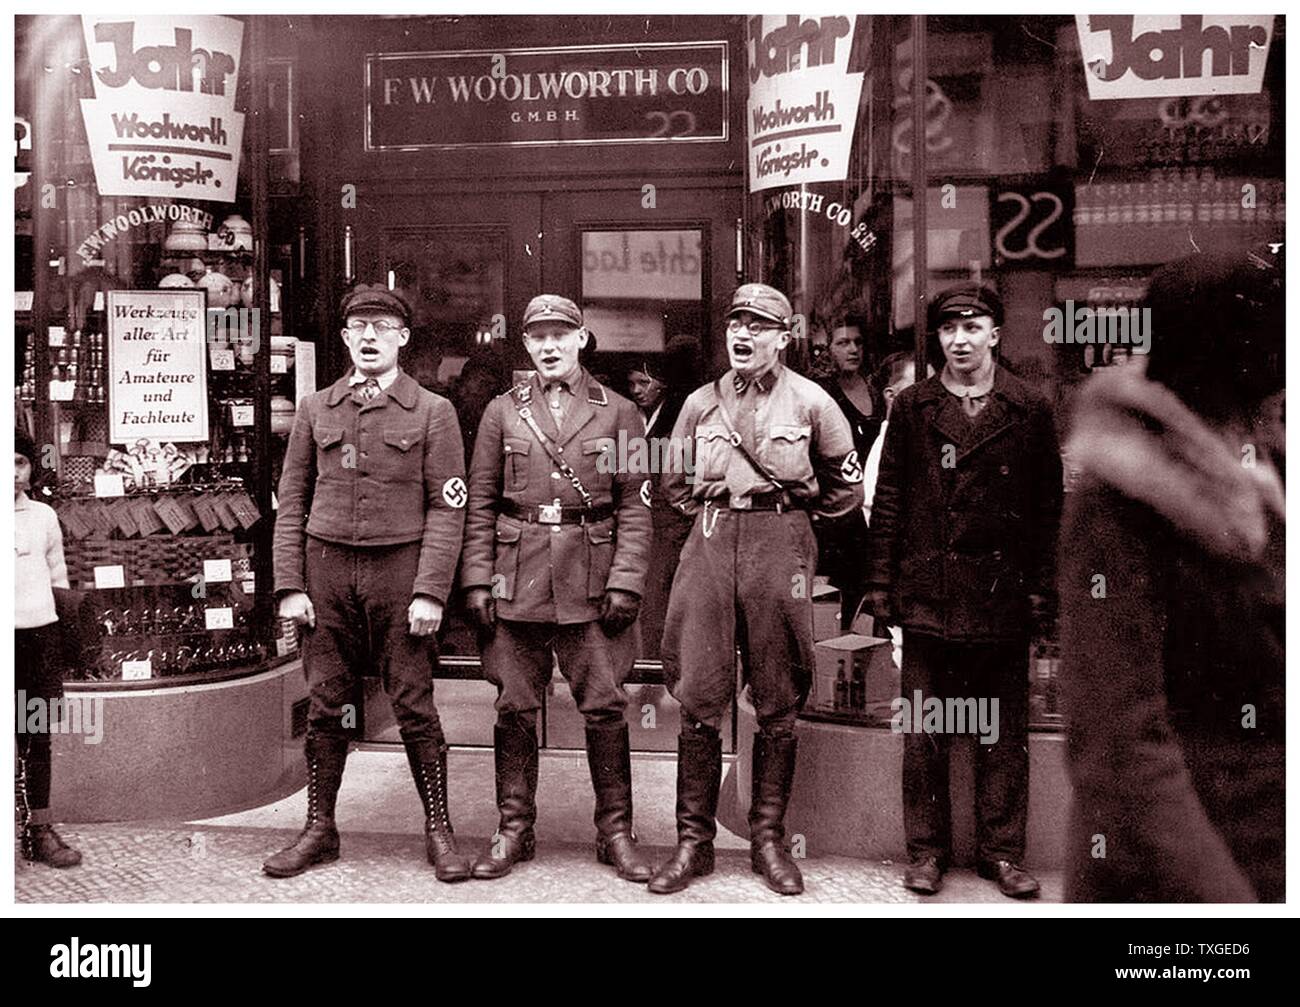 Fotografia di nazisti cantando per incoraggiare un boicottaggio del presunto ebreo-fondata Woolworths. Datata 1933 Foto Stock